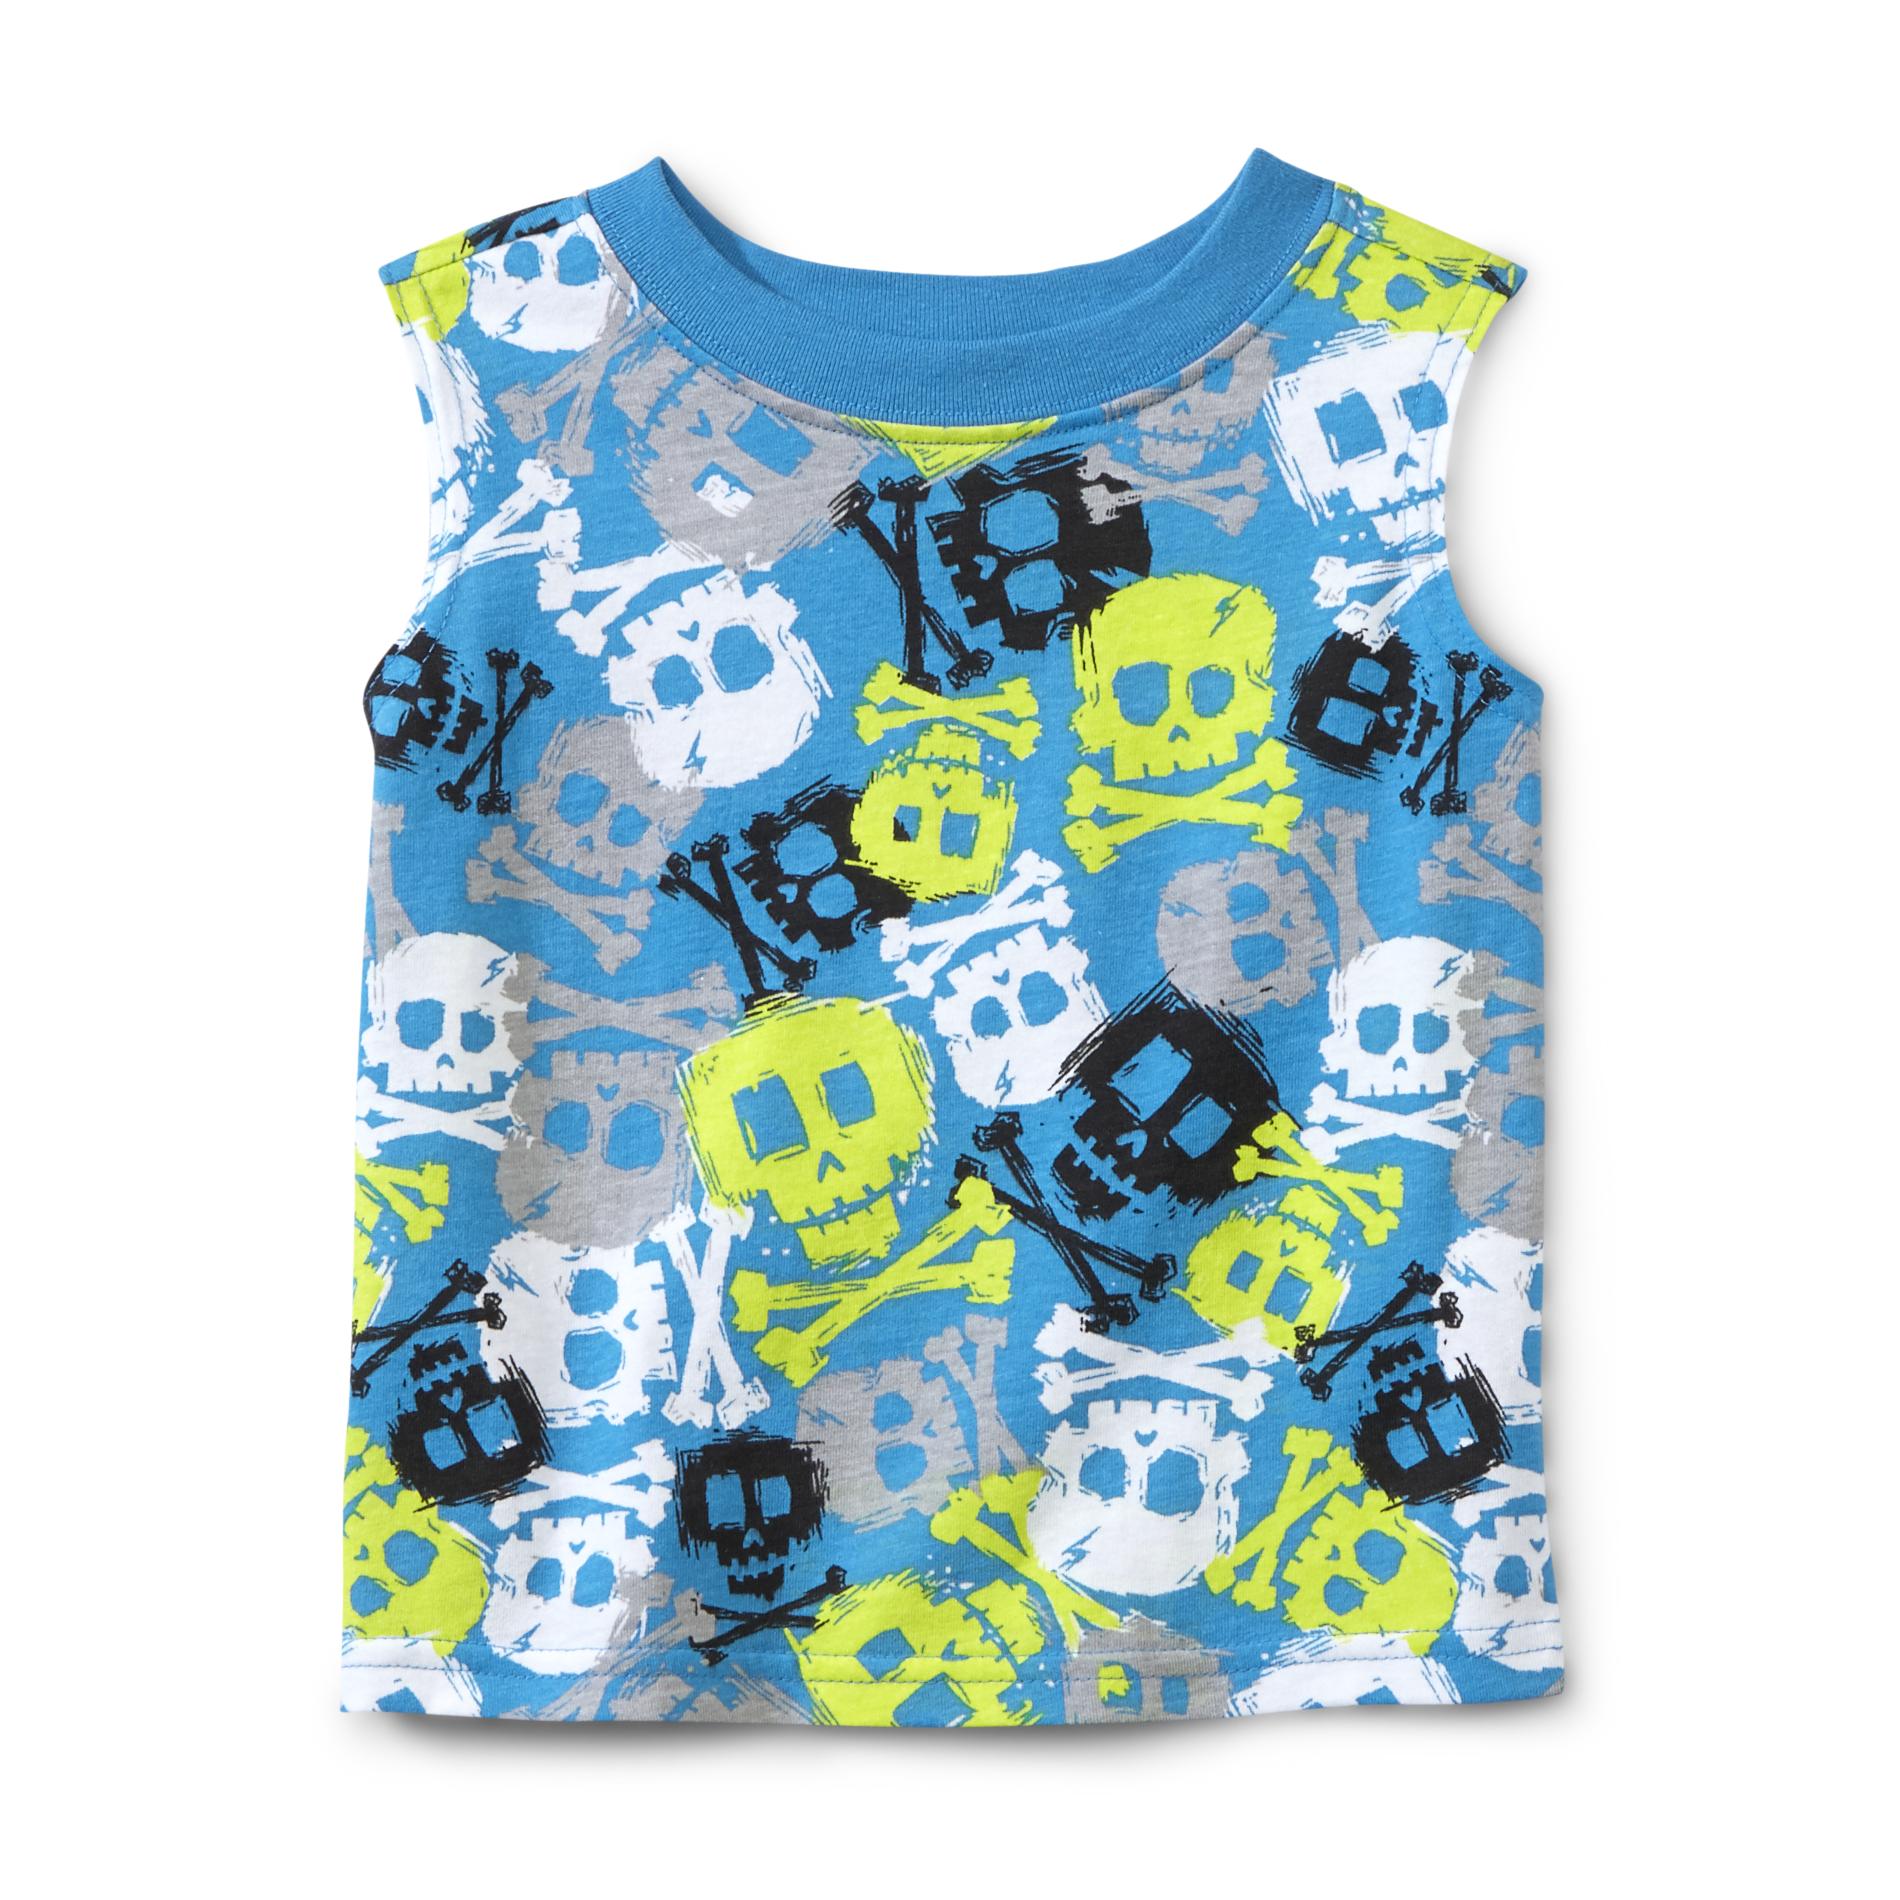 WonderKids Infant & Toddler Boy's Sleeveless Shirt - Skull & Crossbones